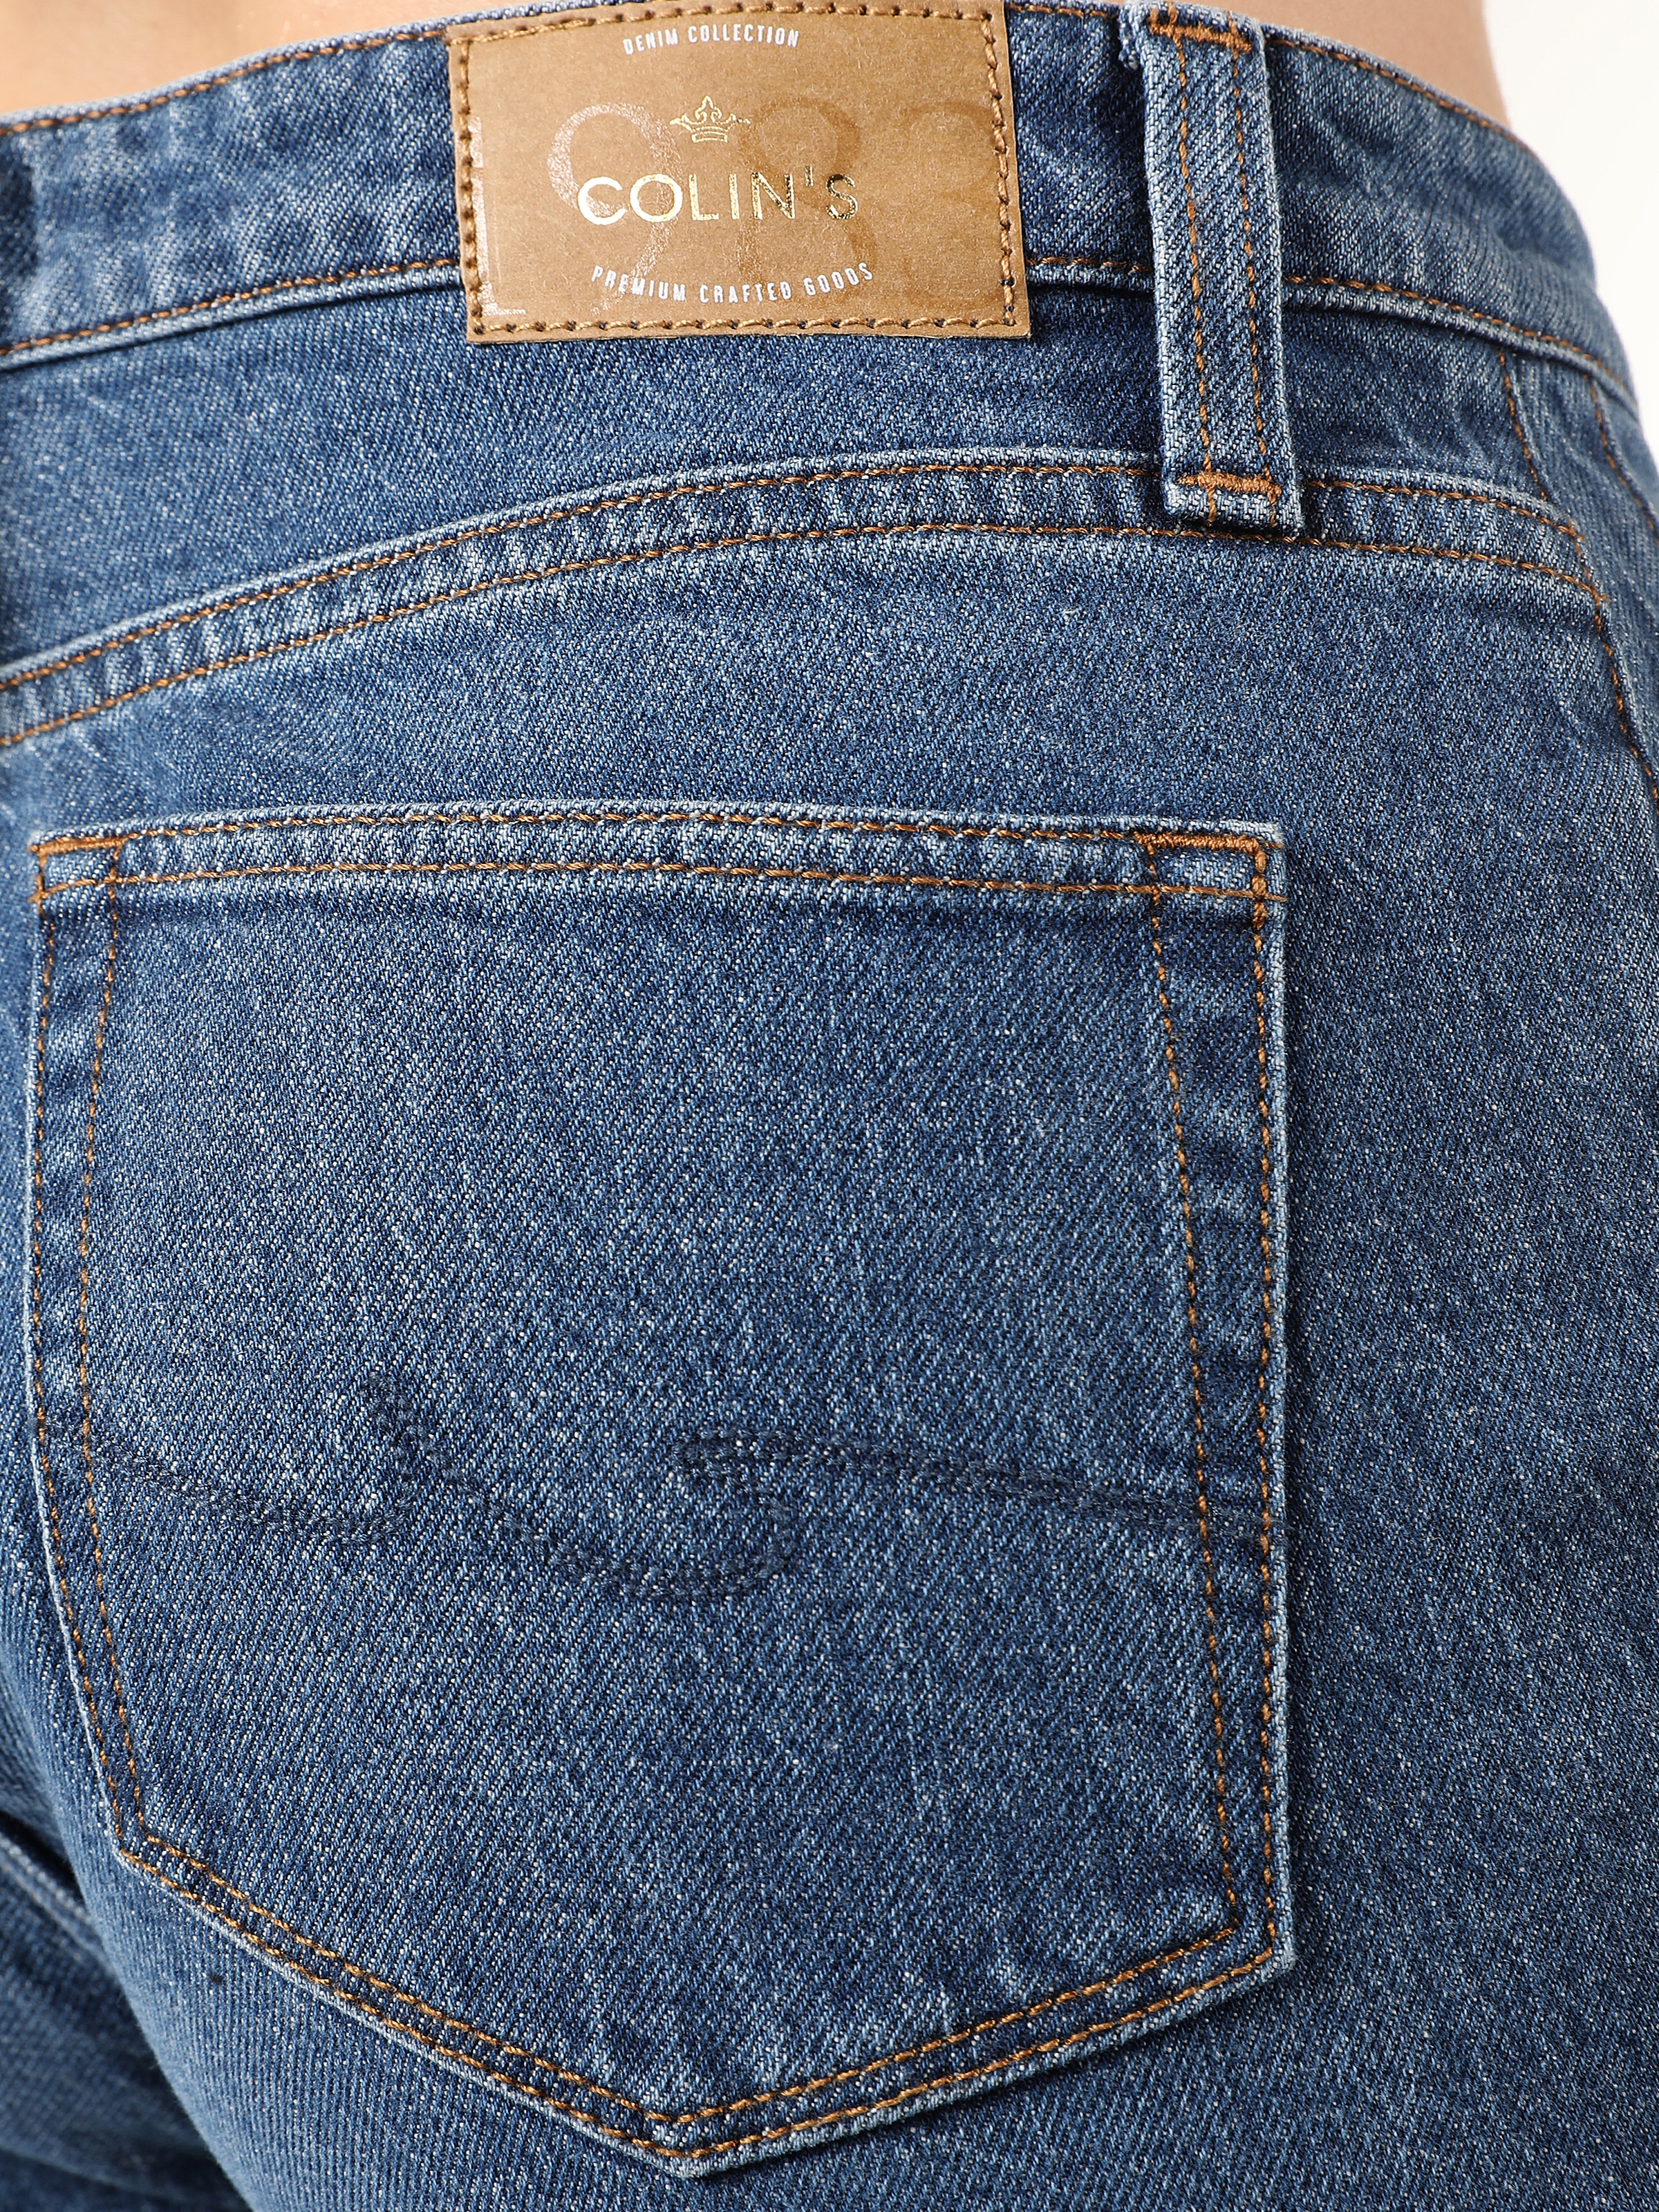 Afișați detalii pentru Pantaloni De Dama Albastru Regular Fit 791 MONICA